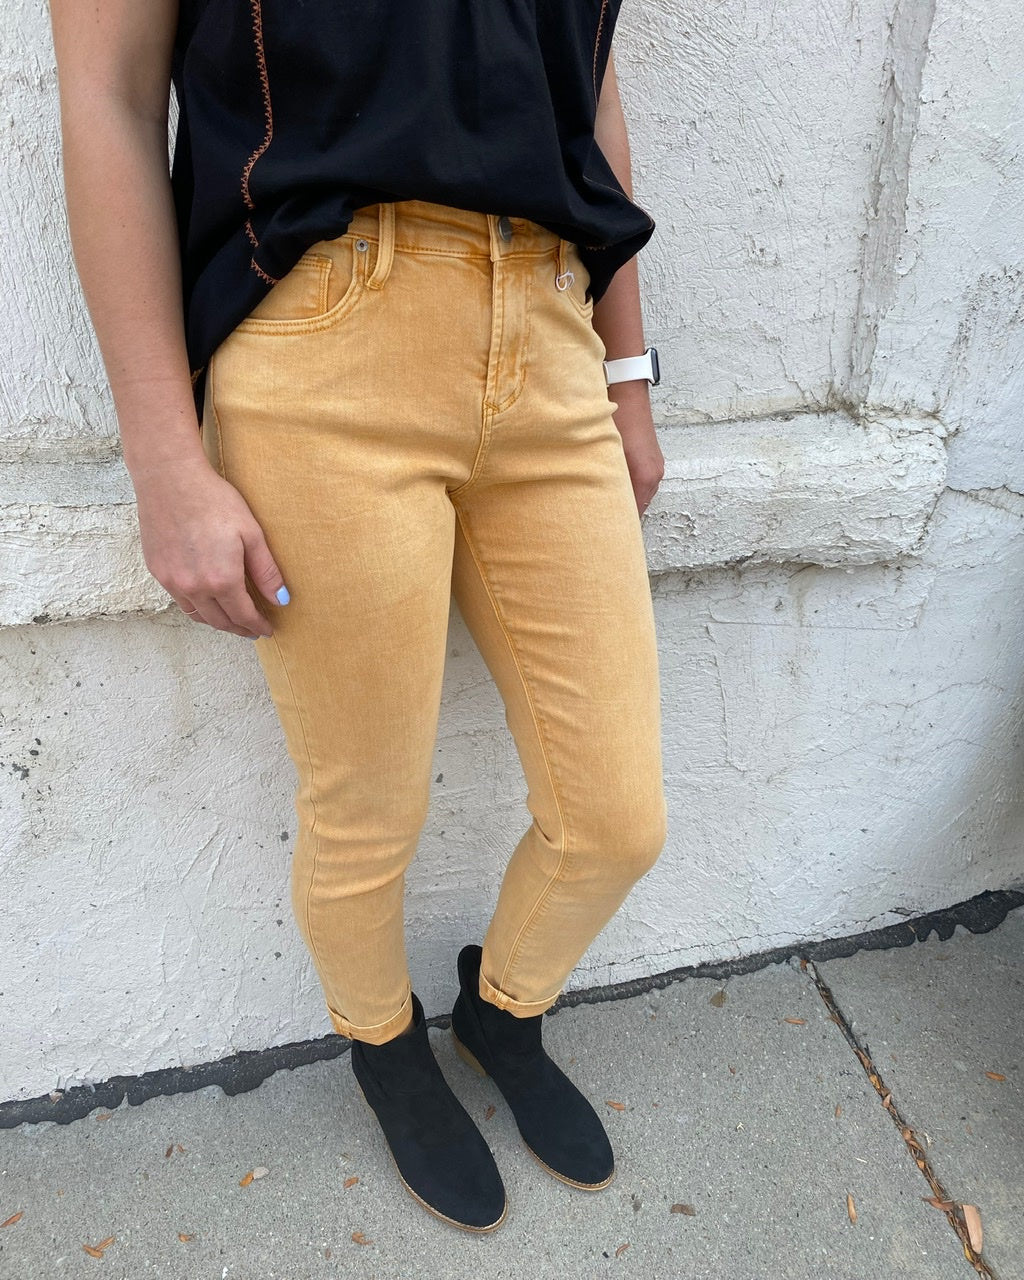 DJD Gisele Colored High Waisted Skinny Jeans